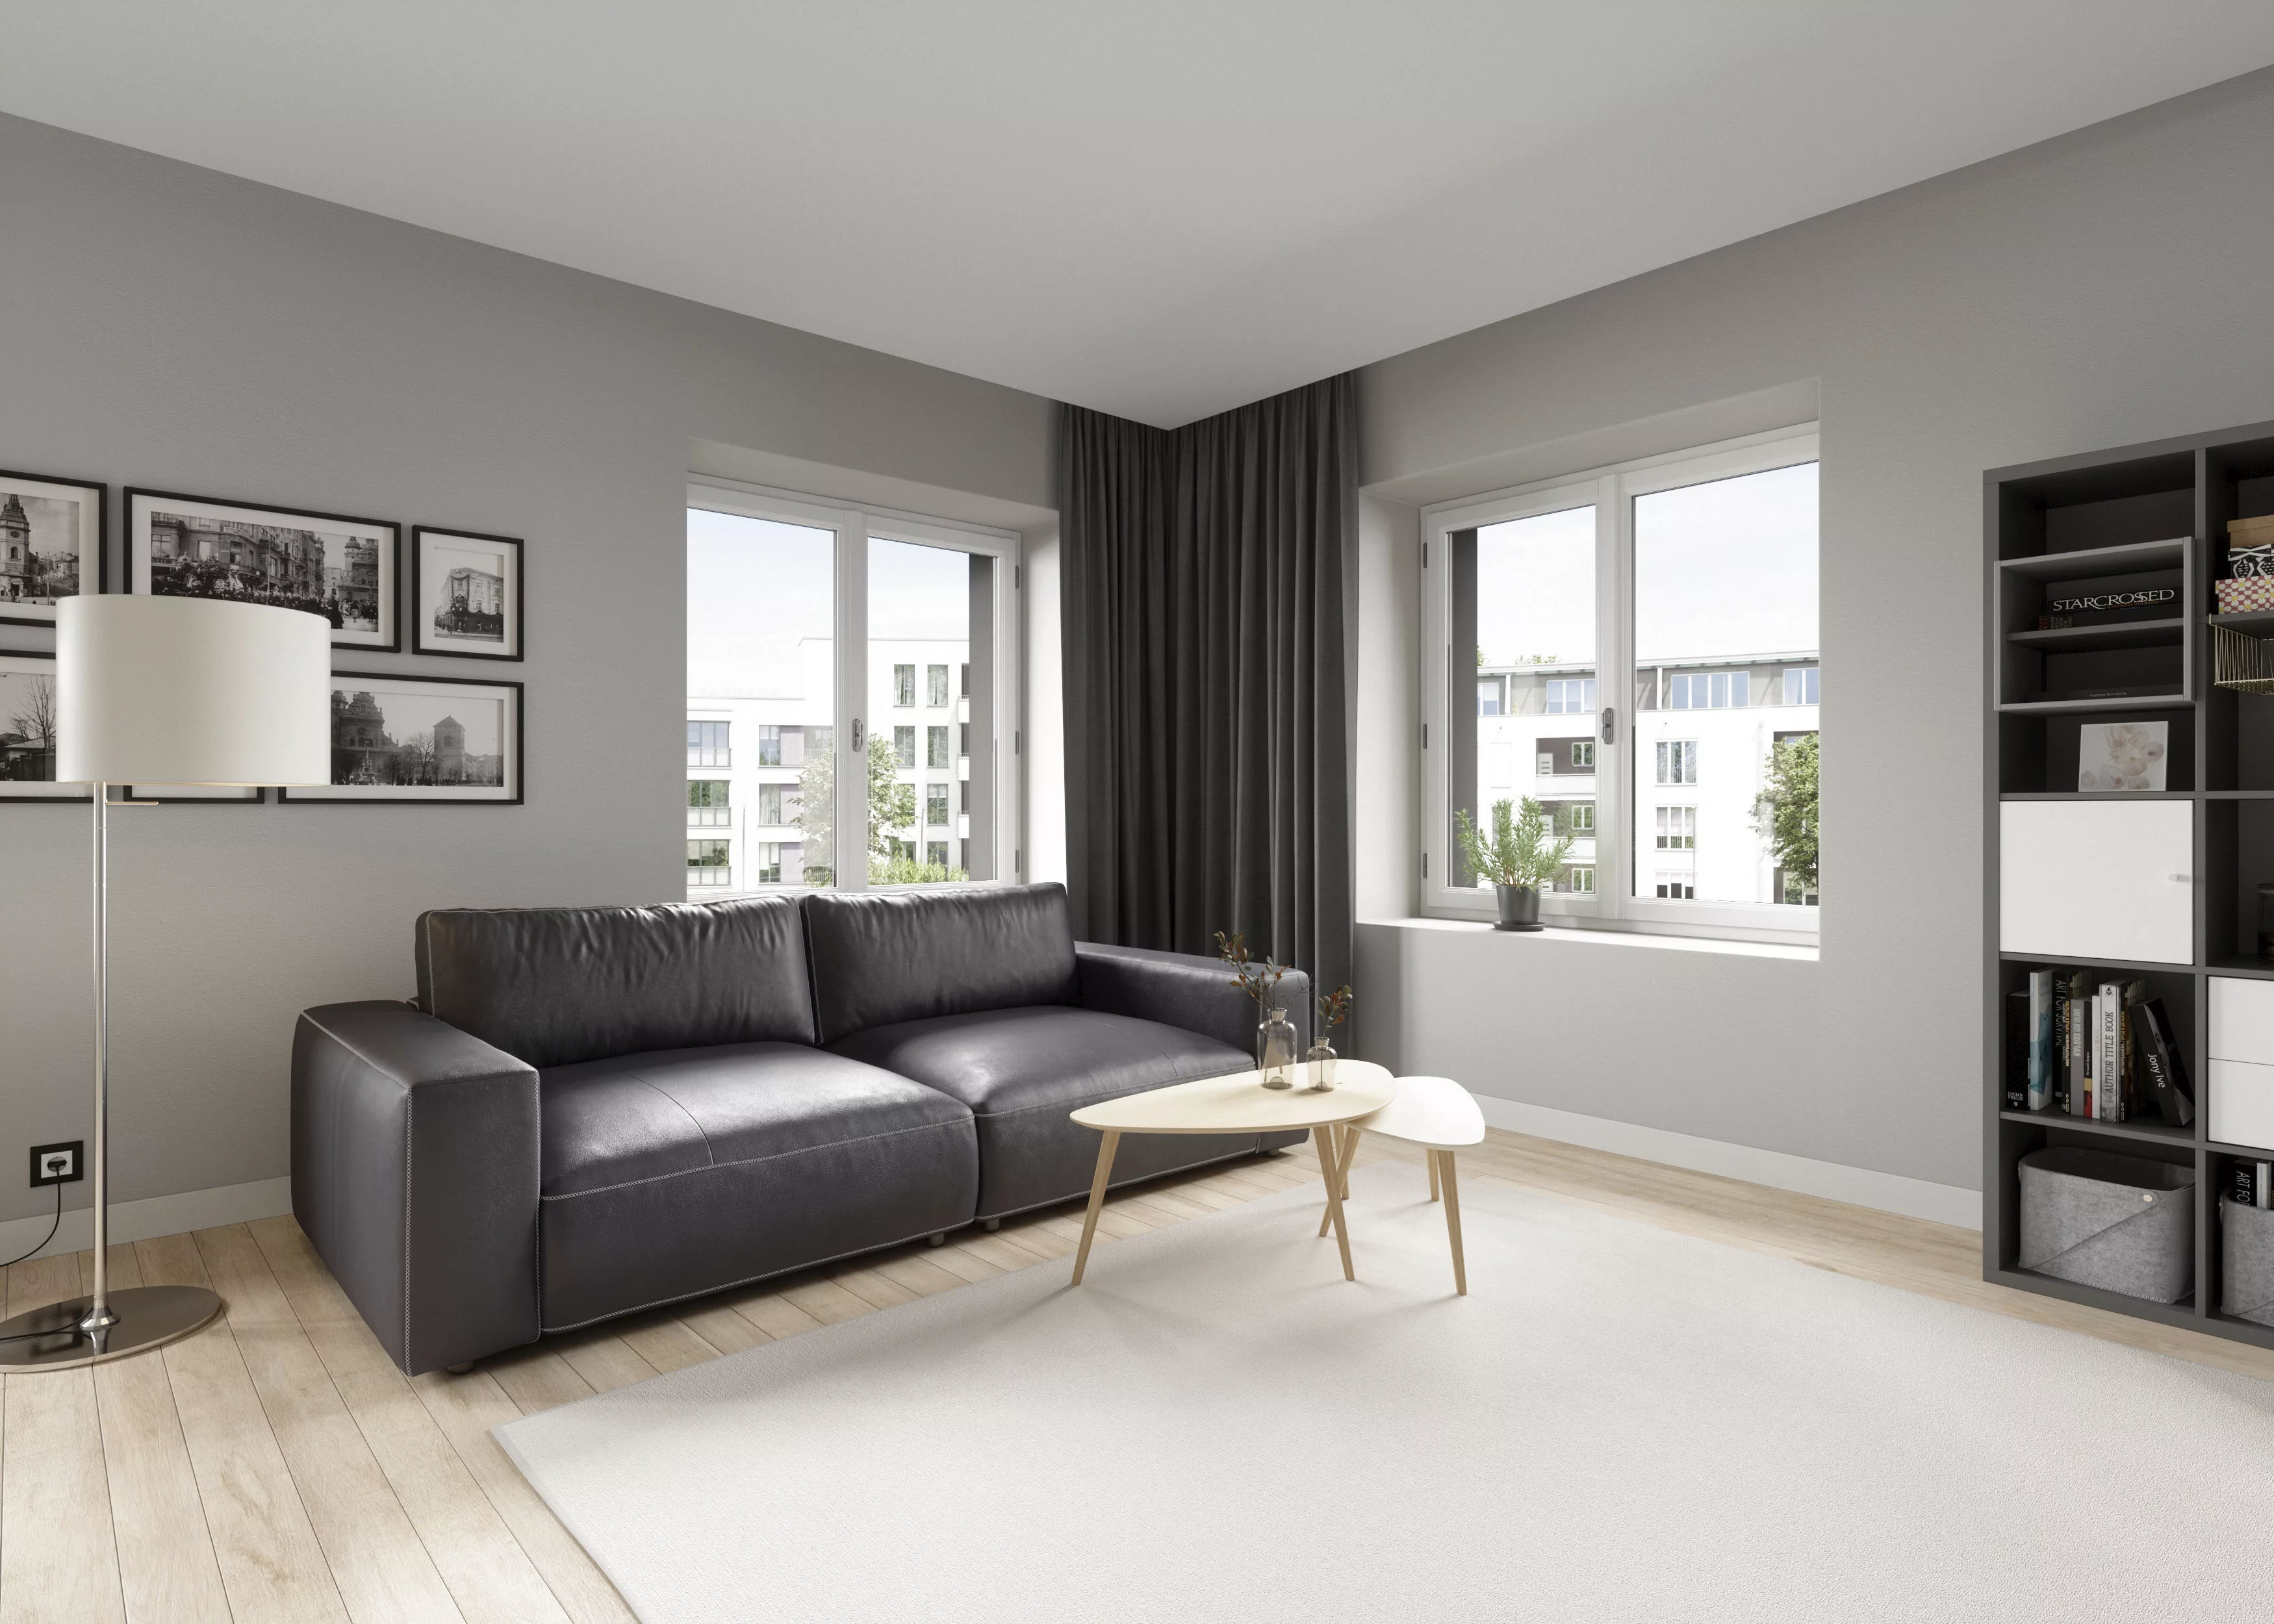 GALLERY M branded by Musterring Big-Sofa "LUCIA", in vielen Qualitäten und günstig online kaufen